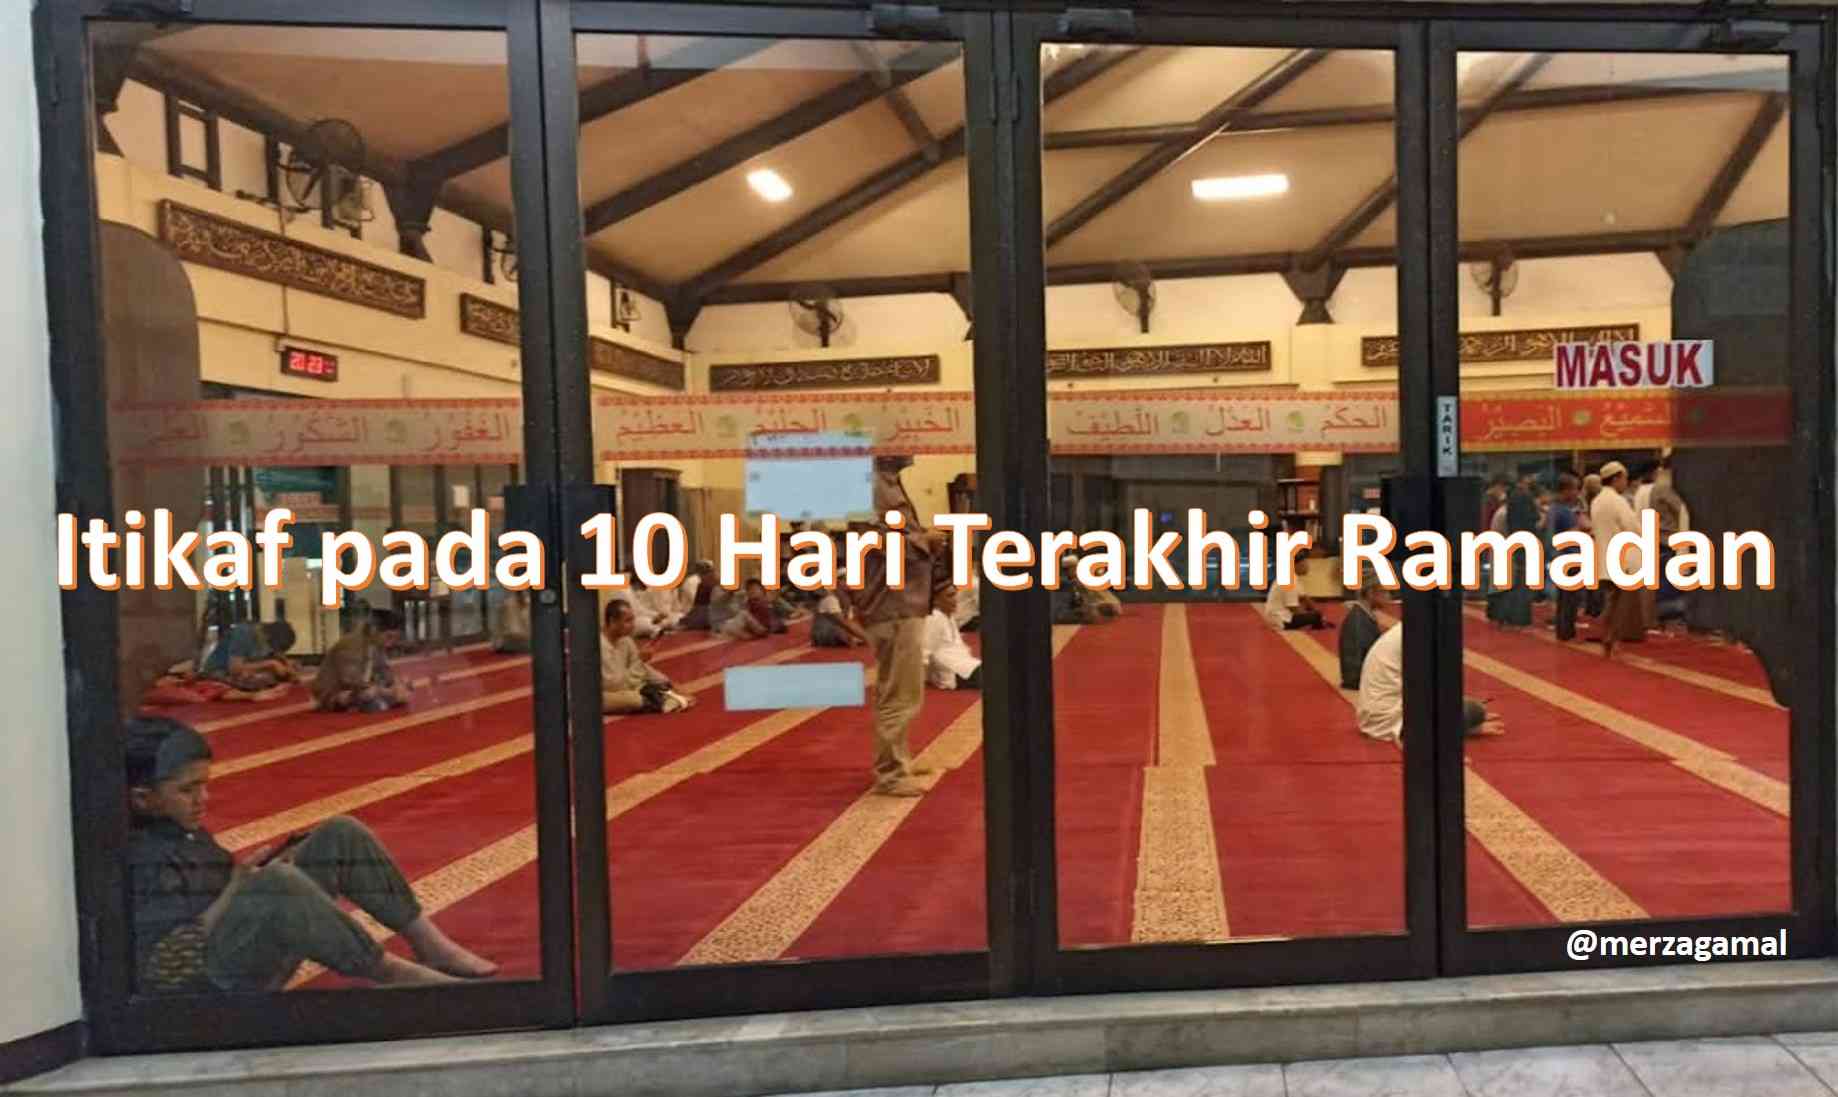 Mendekatkan Diri kepada Allah melalui Itikaf pada 10 Hari Terakhir Ramadan